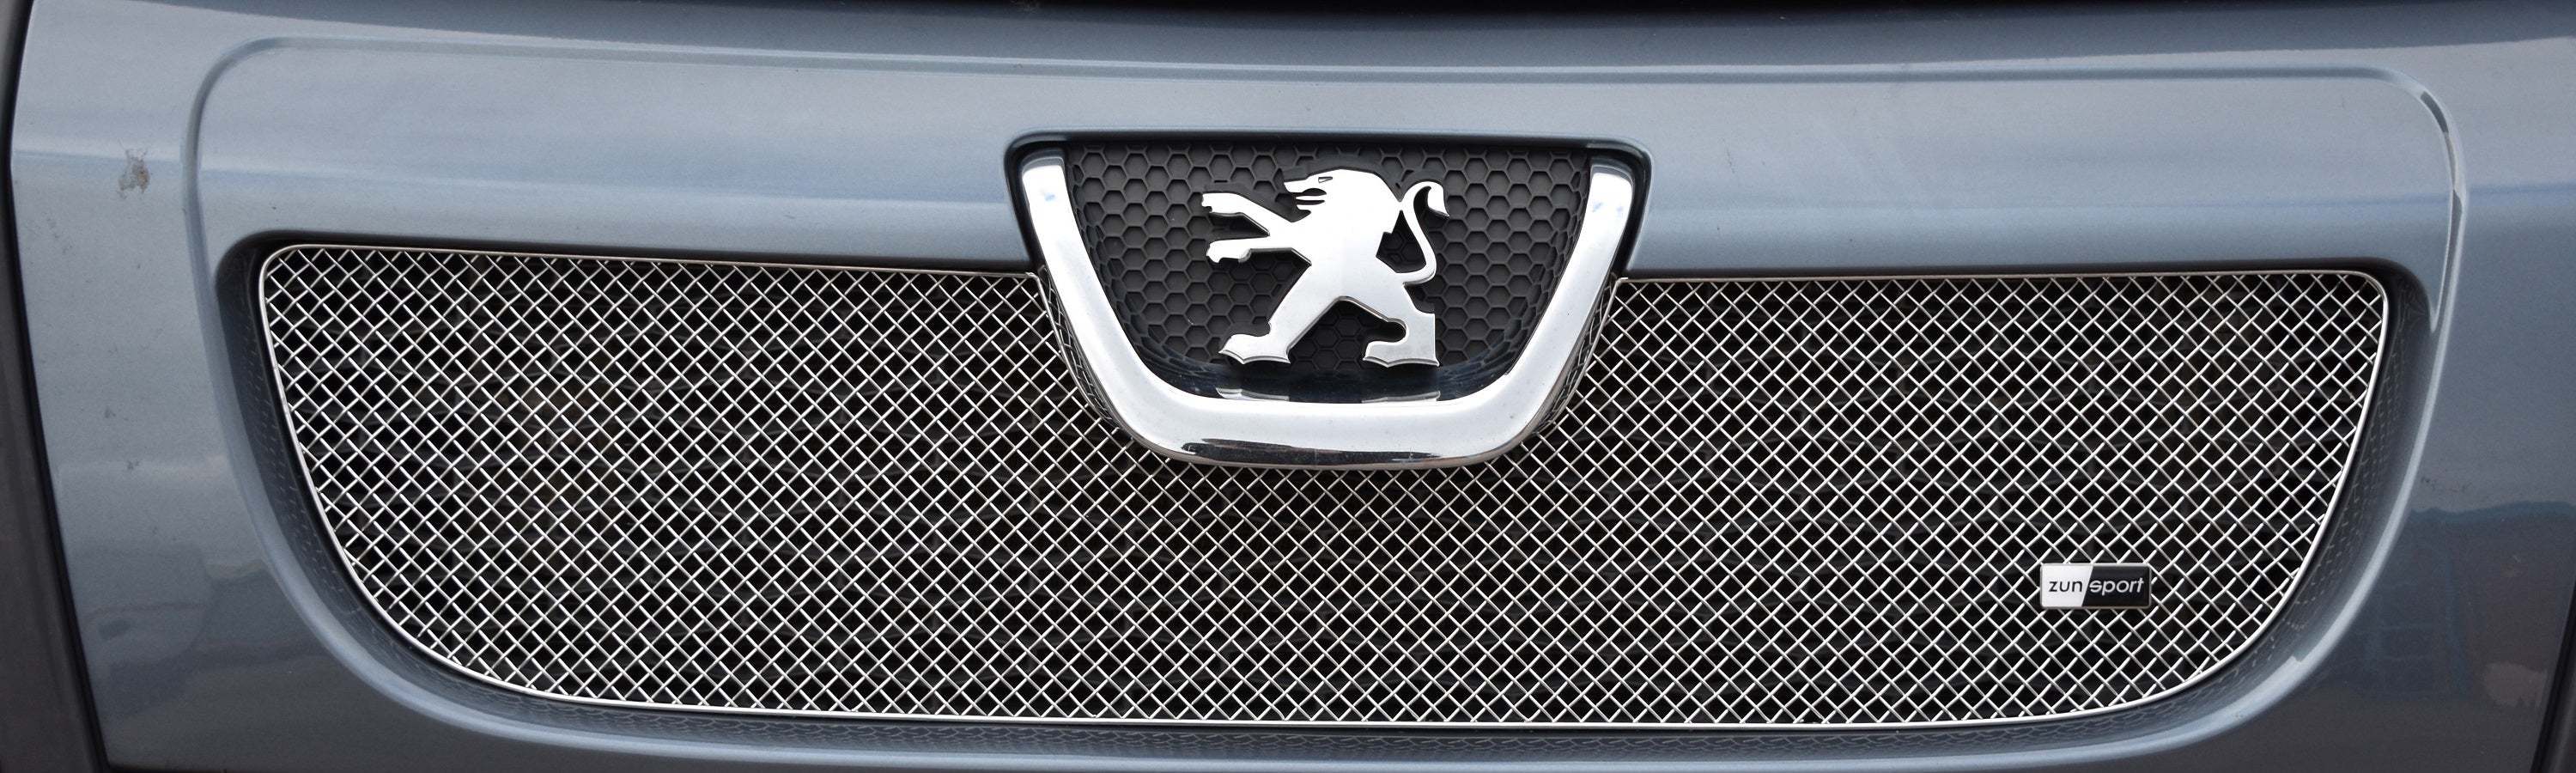 Zunsport Peugeot Boxer Pre-Facelift 2006 - 2013 Upper Grille Black